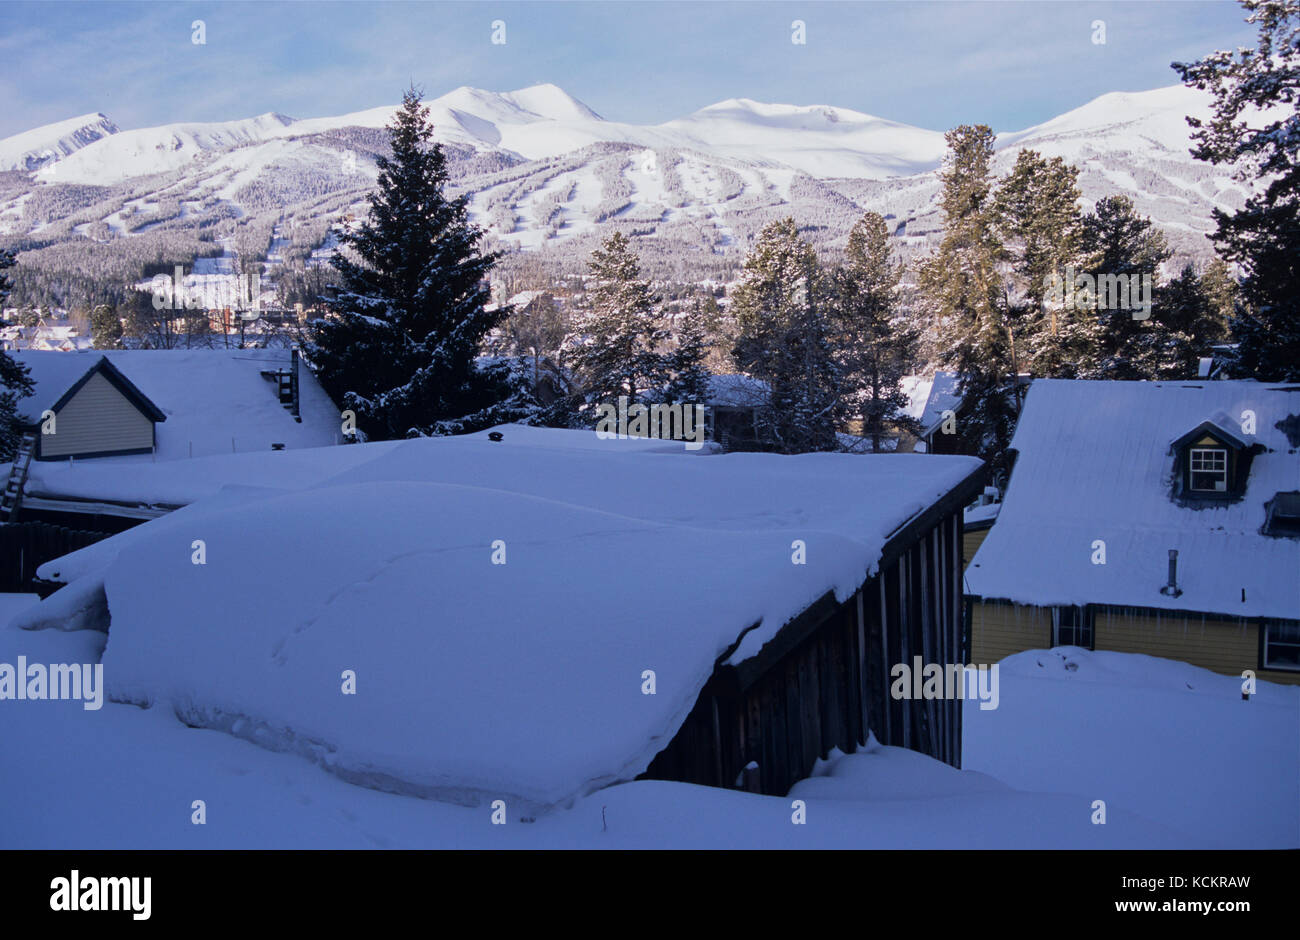 Ville de Breckenridge, station de ski en hiver, altitude 2926 m avec des pics dans les environs plus de 4200 m, l'une des régions les plus hautes des États-Unis. Morn. Précoce Banque D'Images